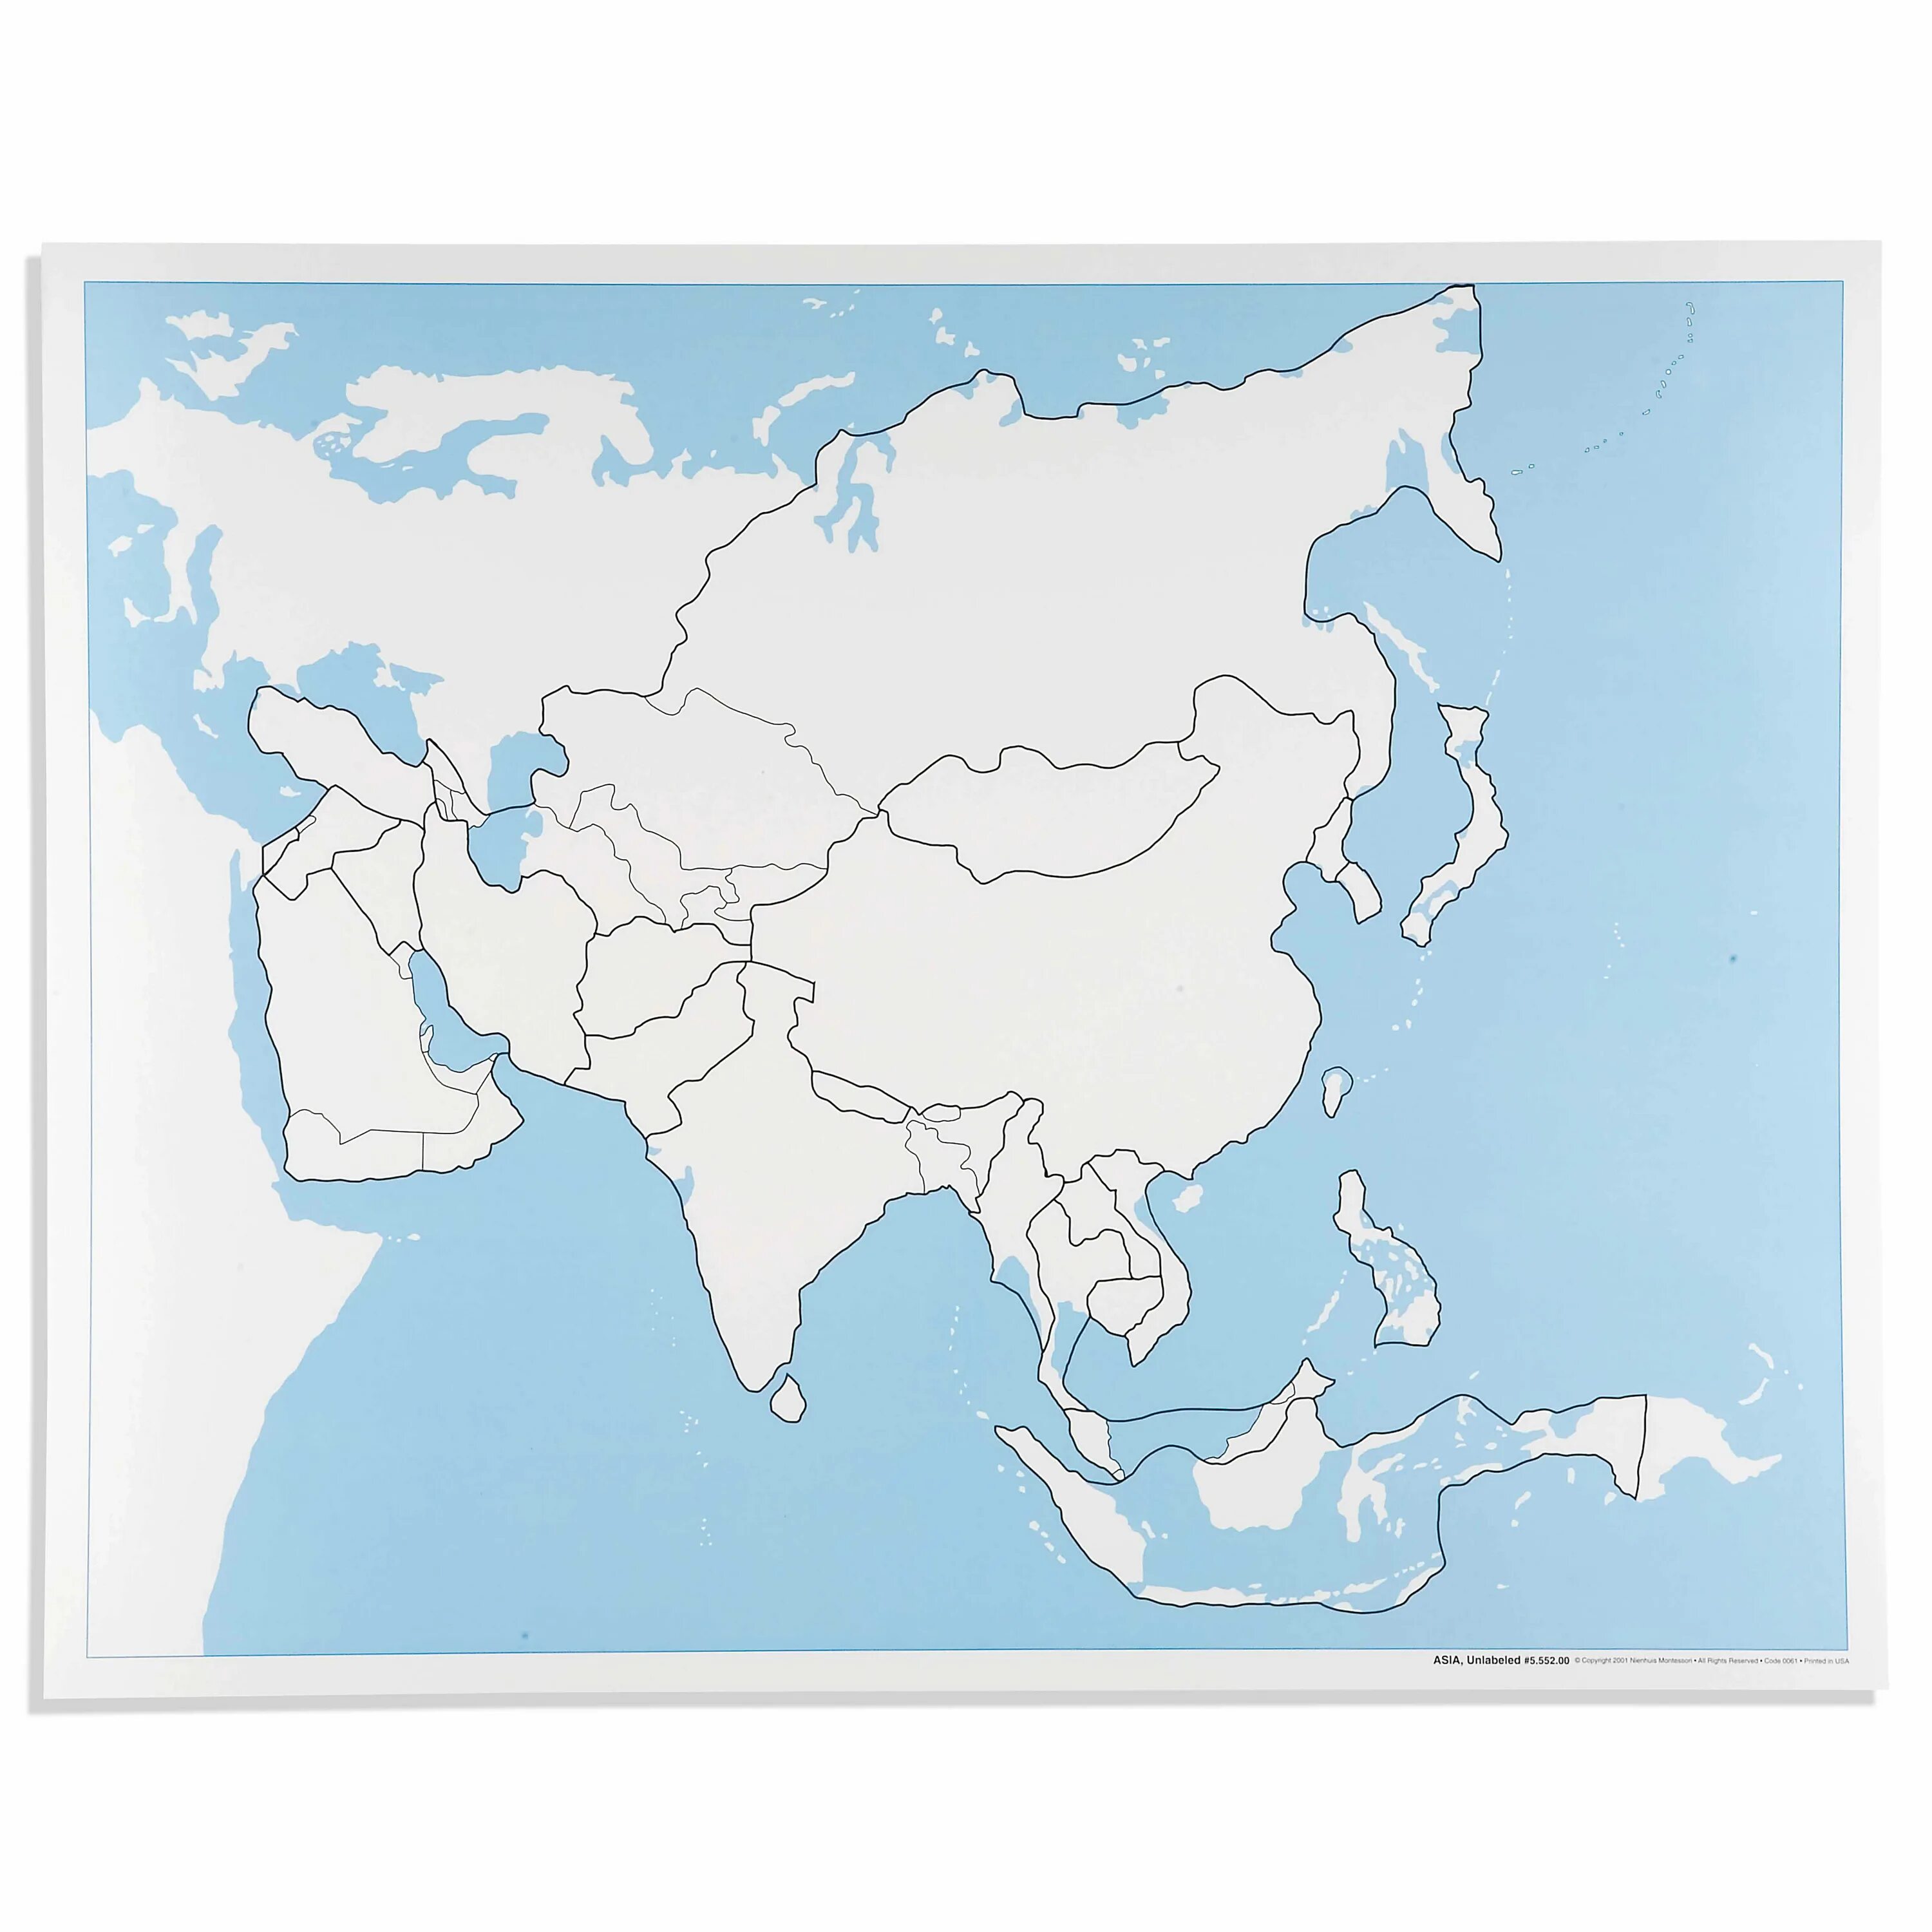 Карта зарубежной Азии пустая. Политическая контурная карта Азии. Политическая карта Азии пустая. Политическая контурная карта зарубежной Азии.